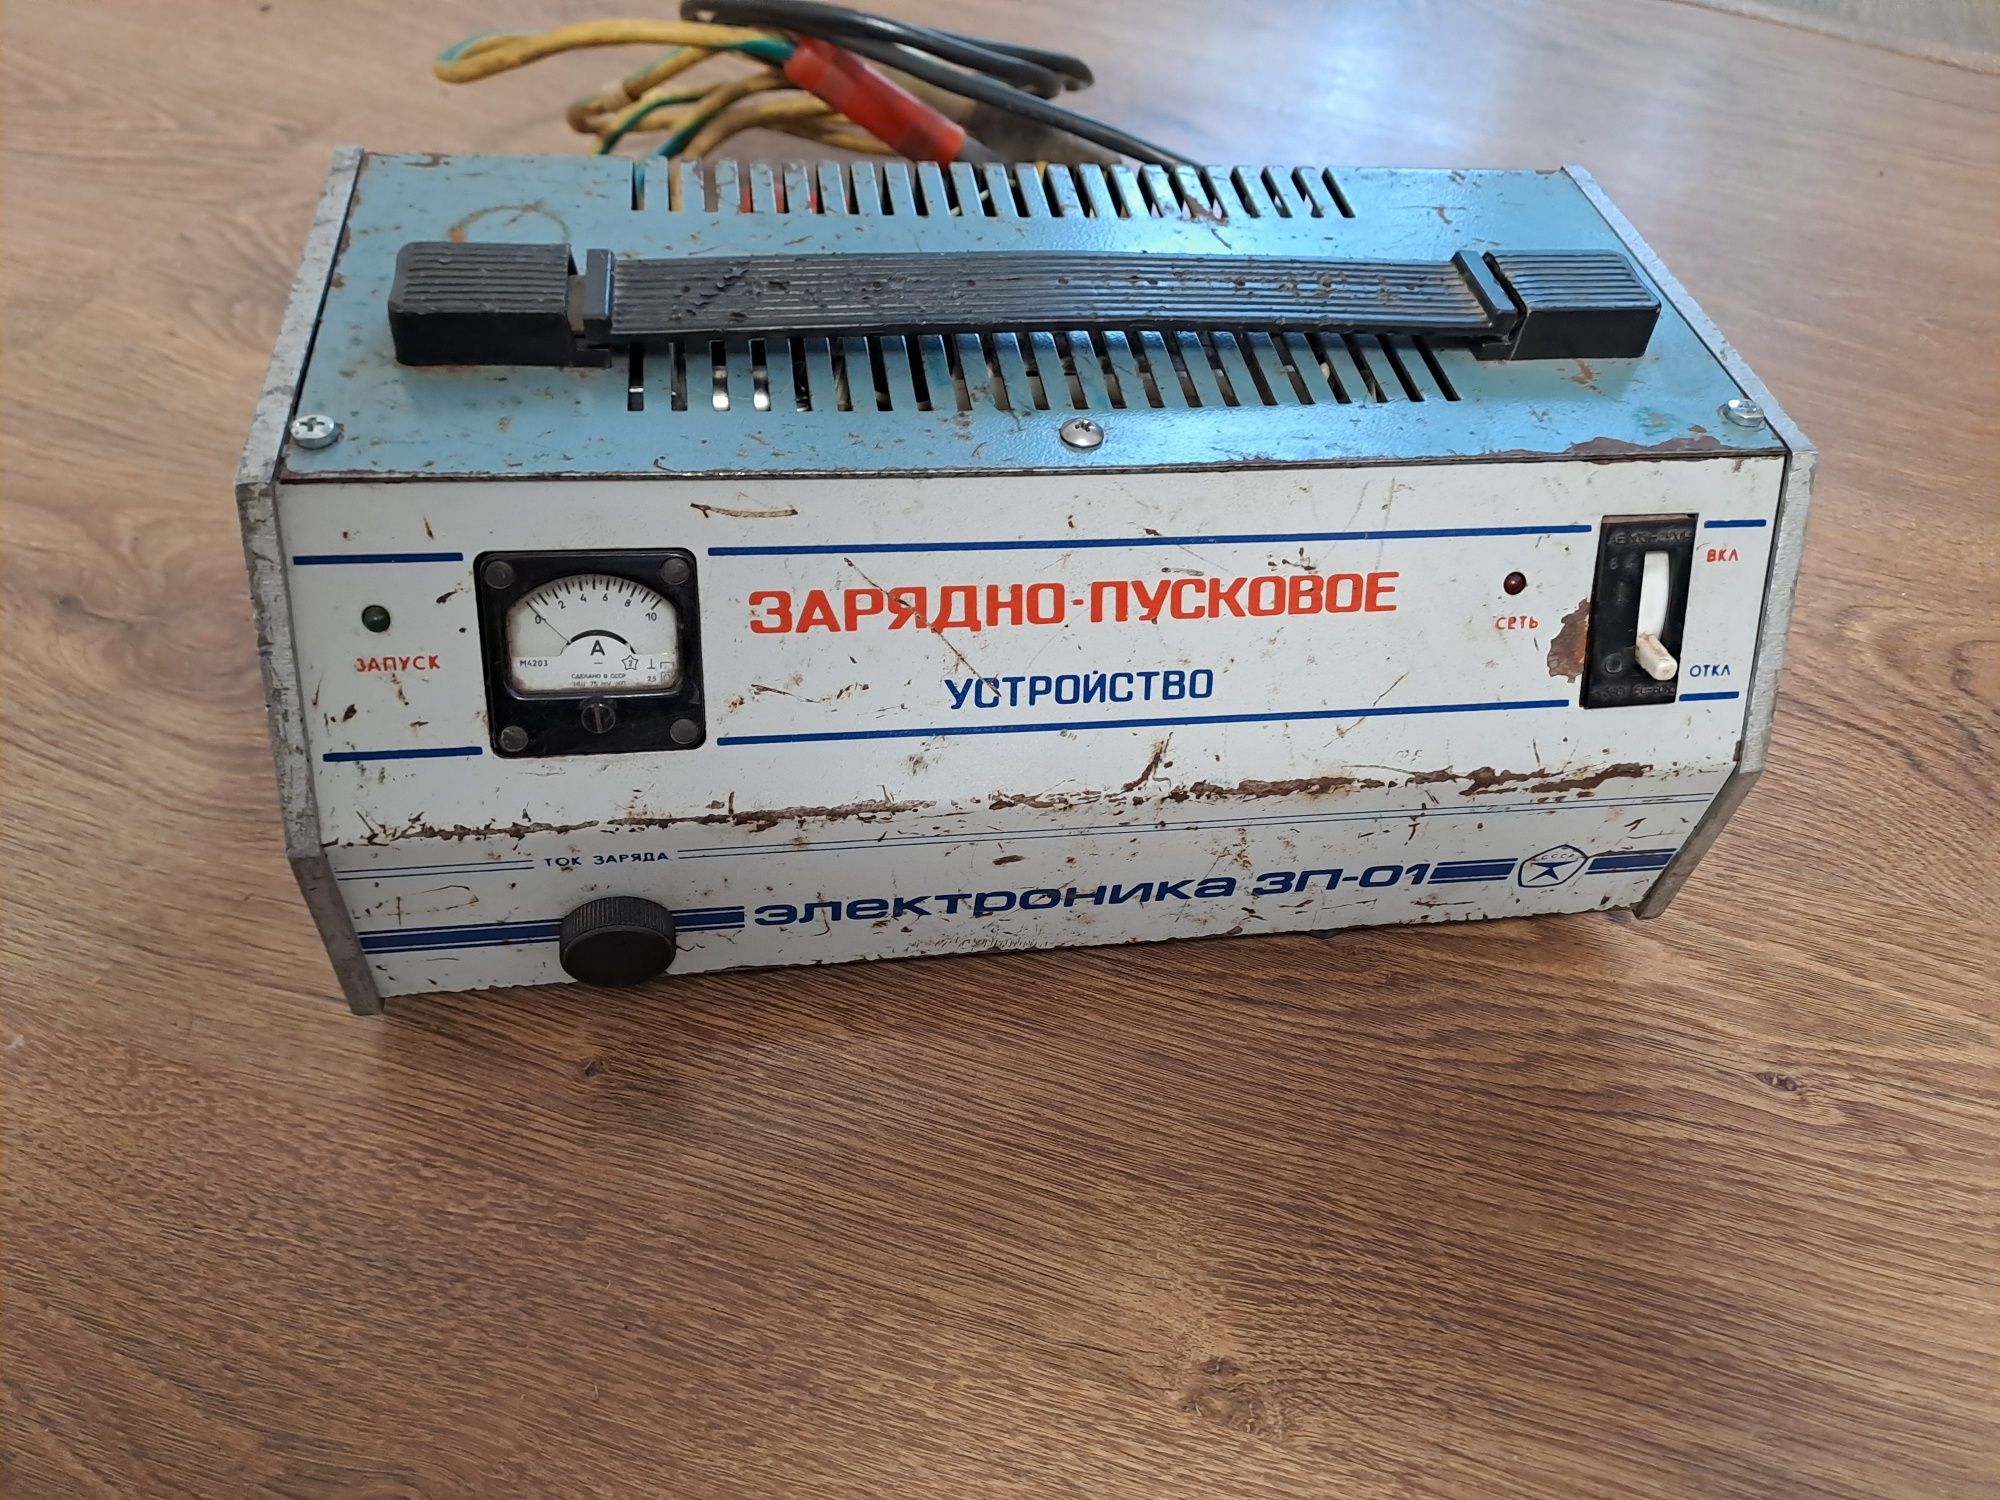 Советское пуско-зарядное устройство Электроника ЗП-01.